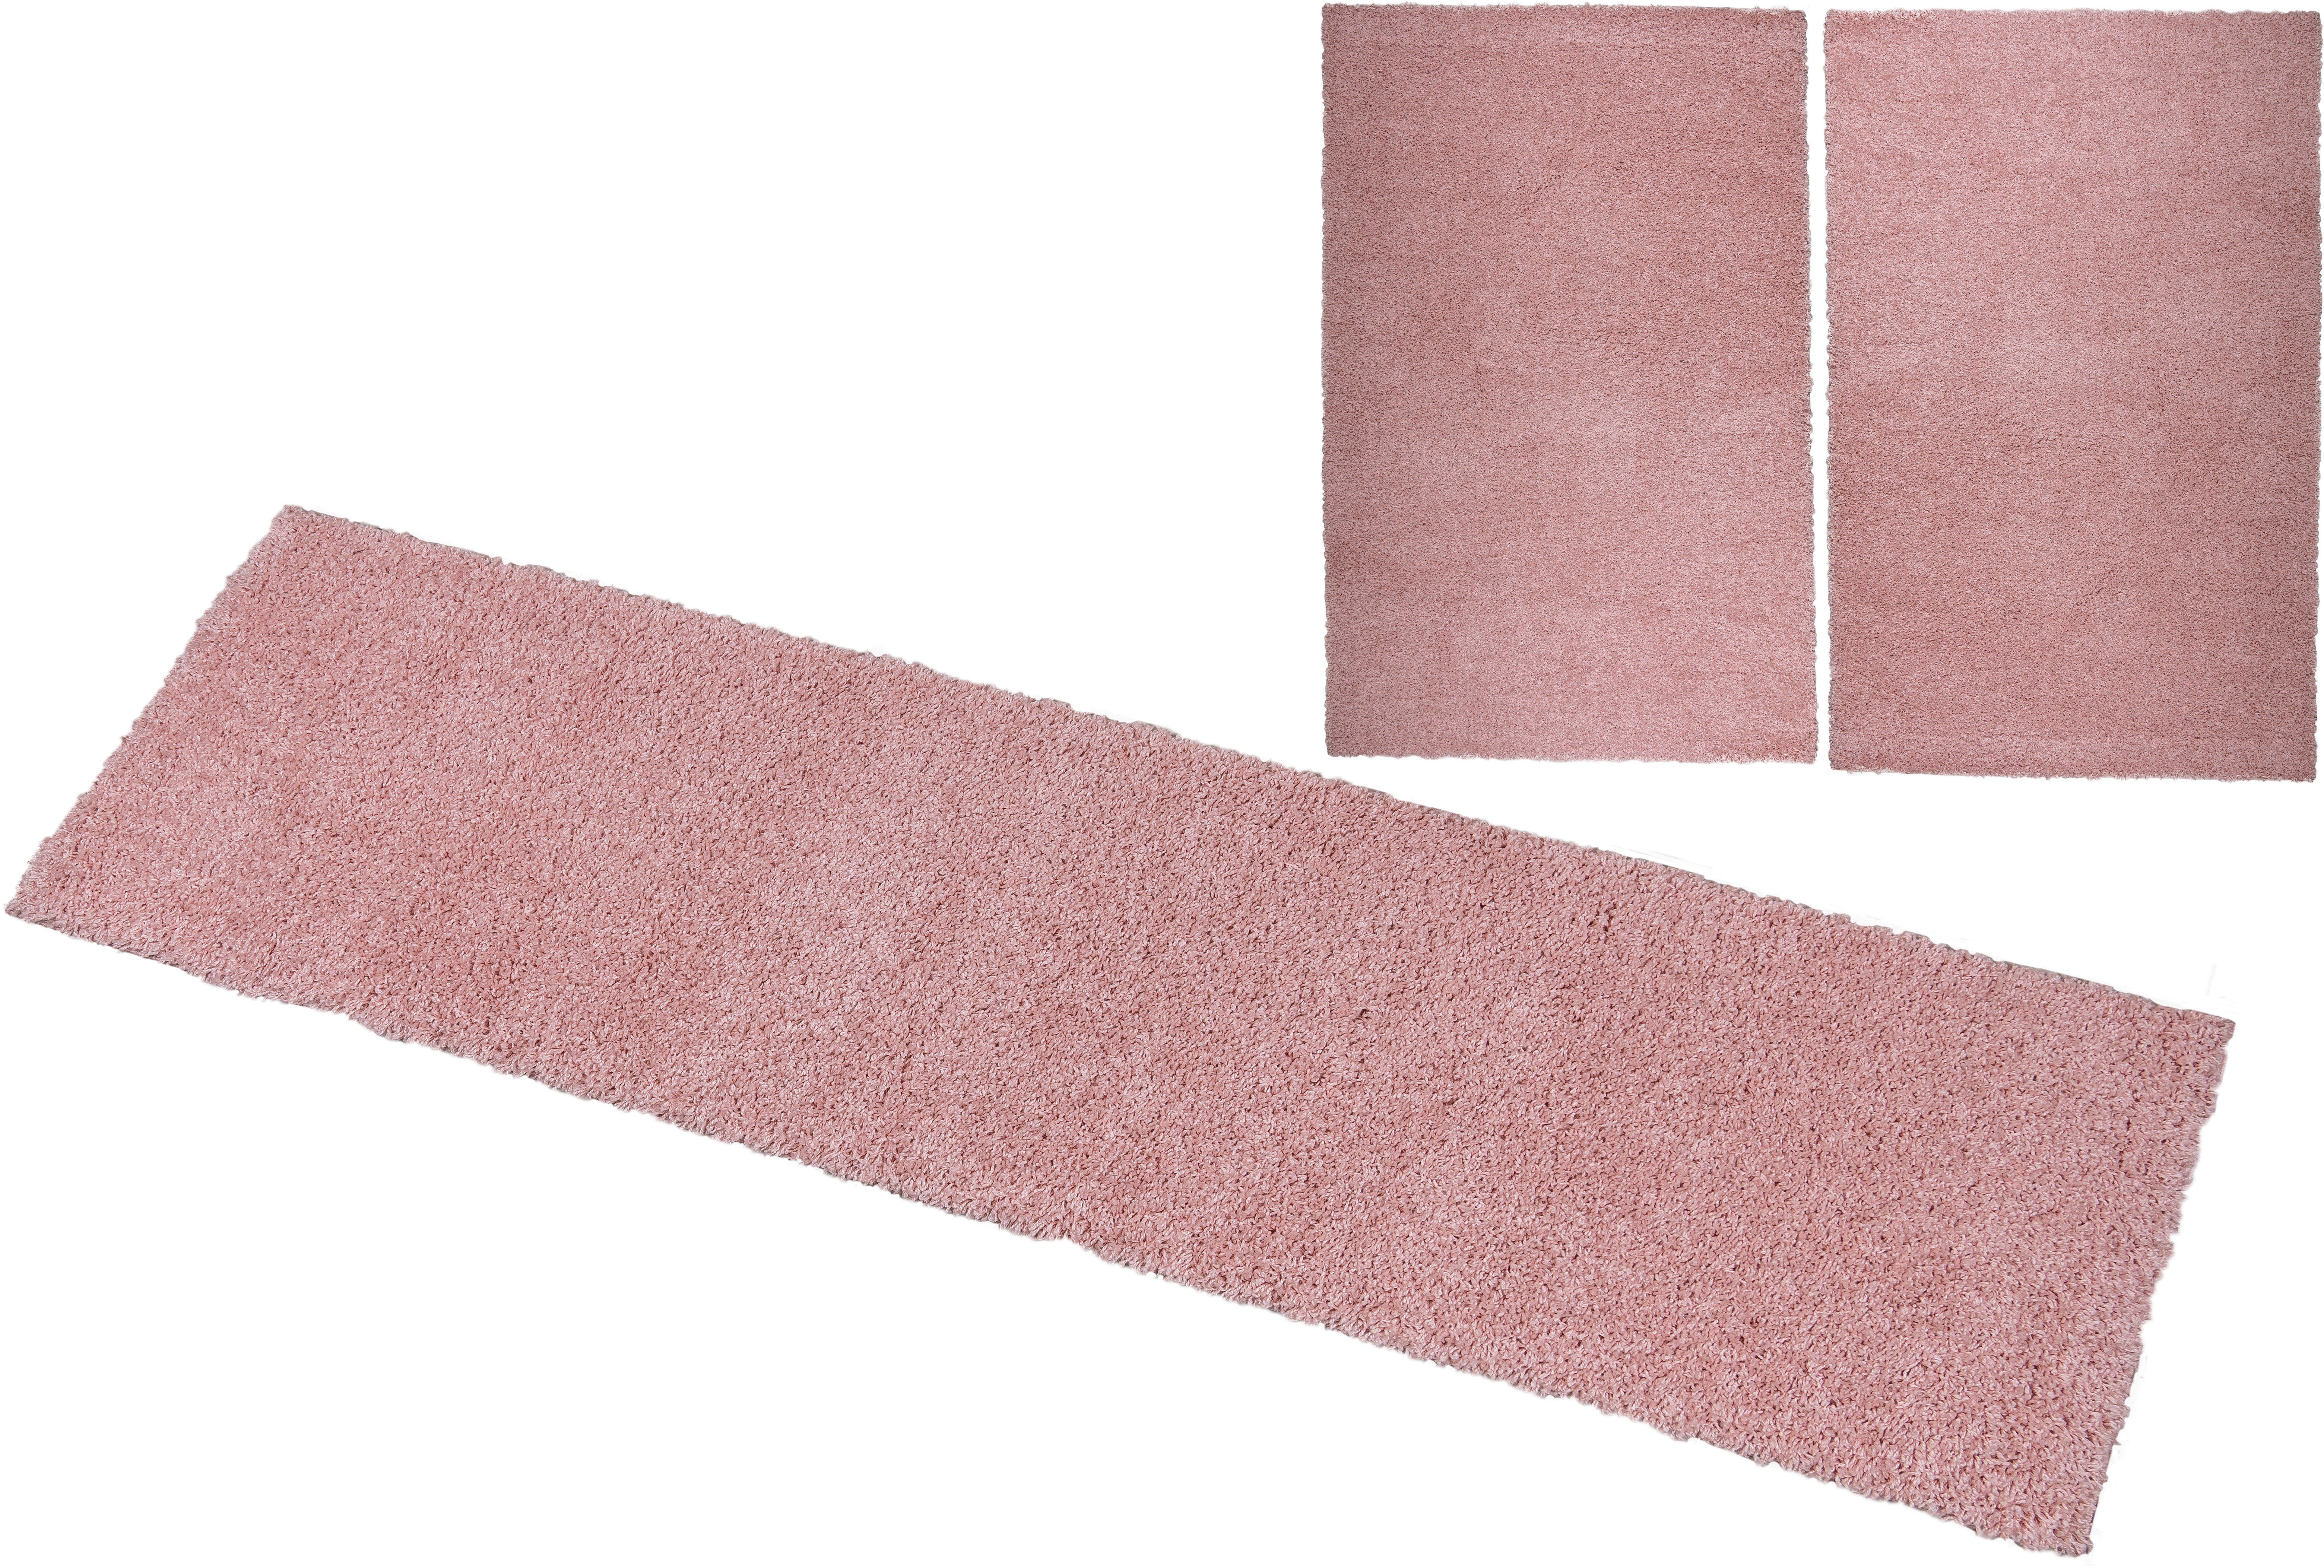 Bettumrandung Viva Home affaire, Höhe 45 mm, (3-tlg), Bettvorleger, Läufer-Set, Uni-Farben, einfarbig, besonders kuschelig rosa